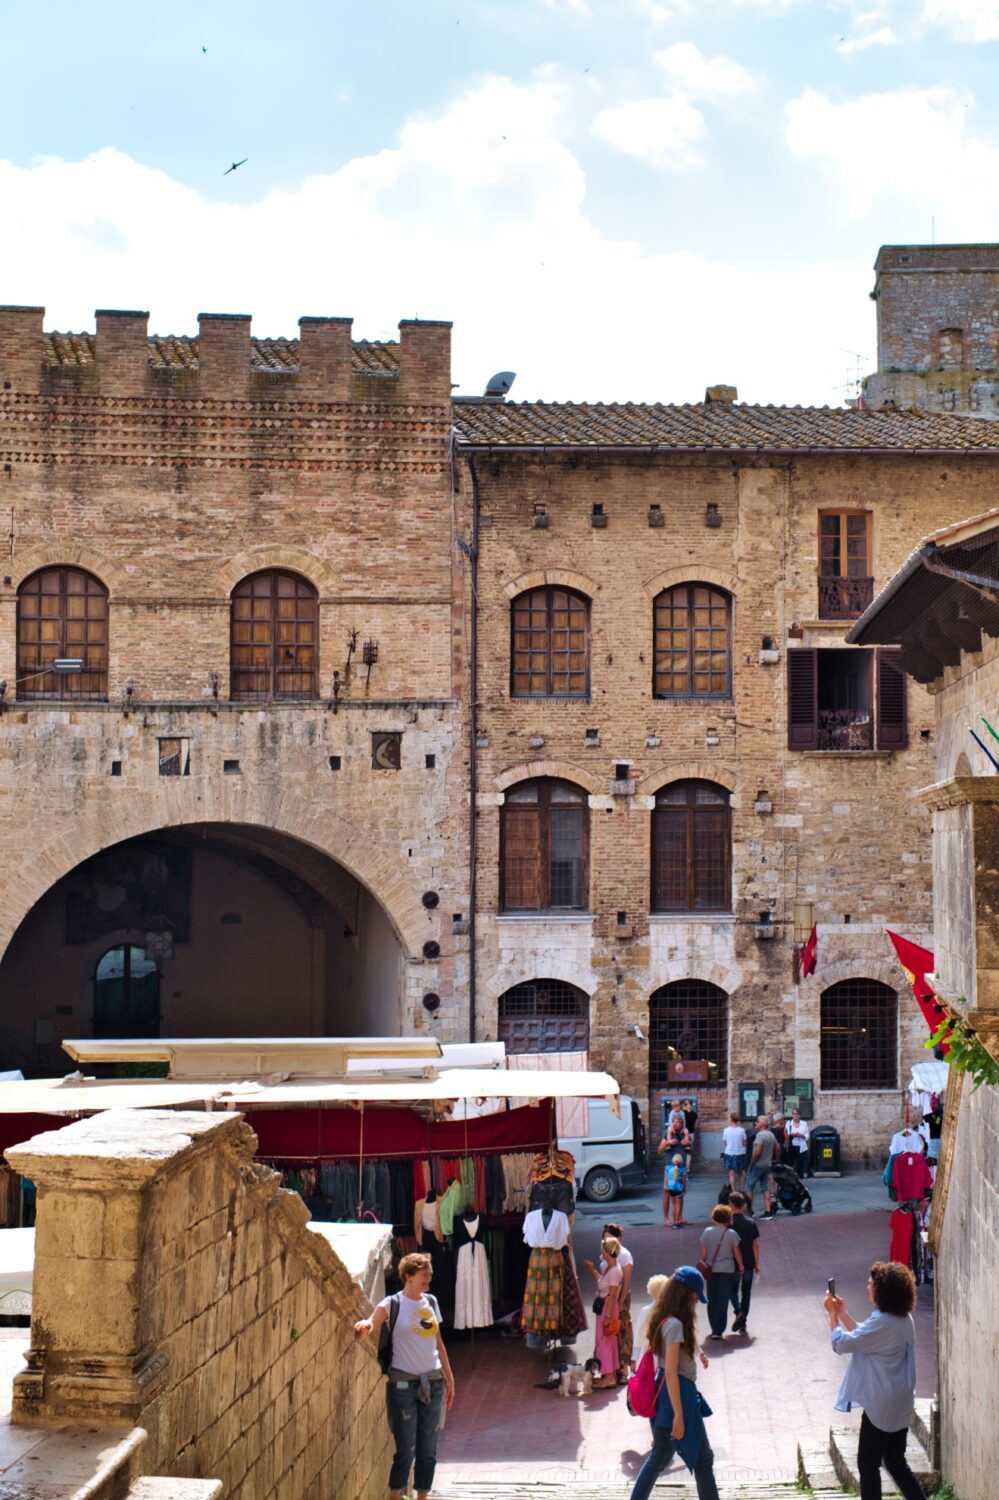 San Gimignano markets